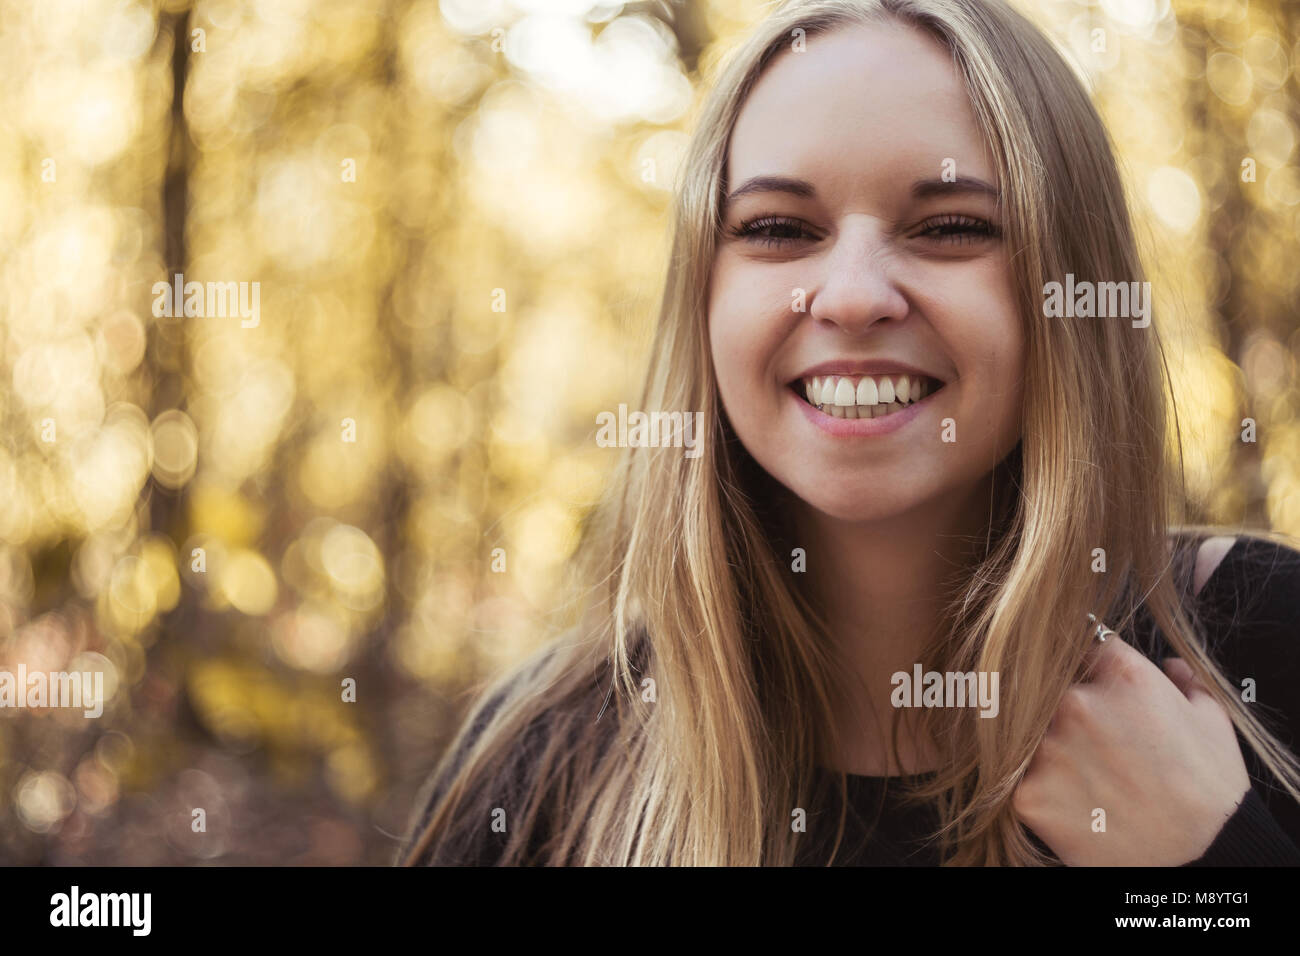 Portrait eines glücklichen jungen Frau mit breitem Lächeln und lange blonde Haare Stockfoto